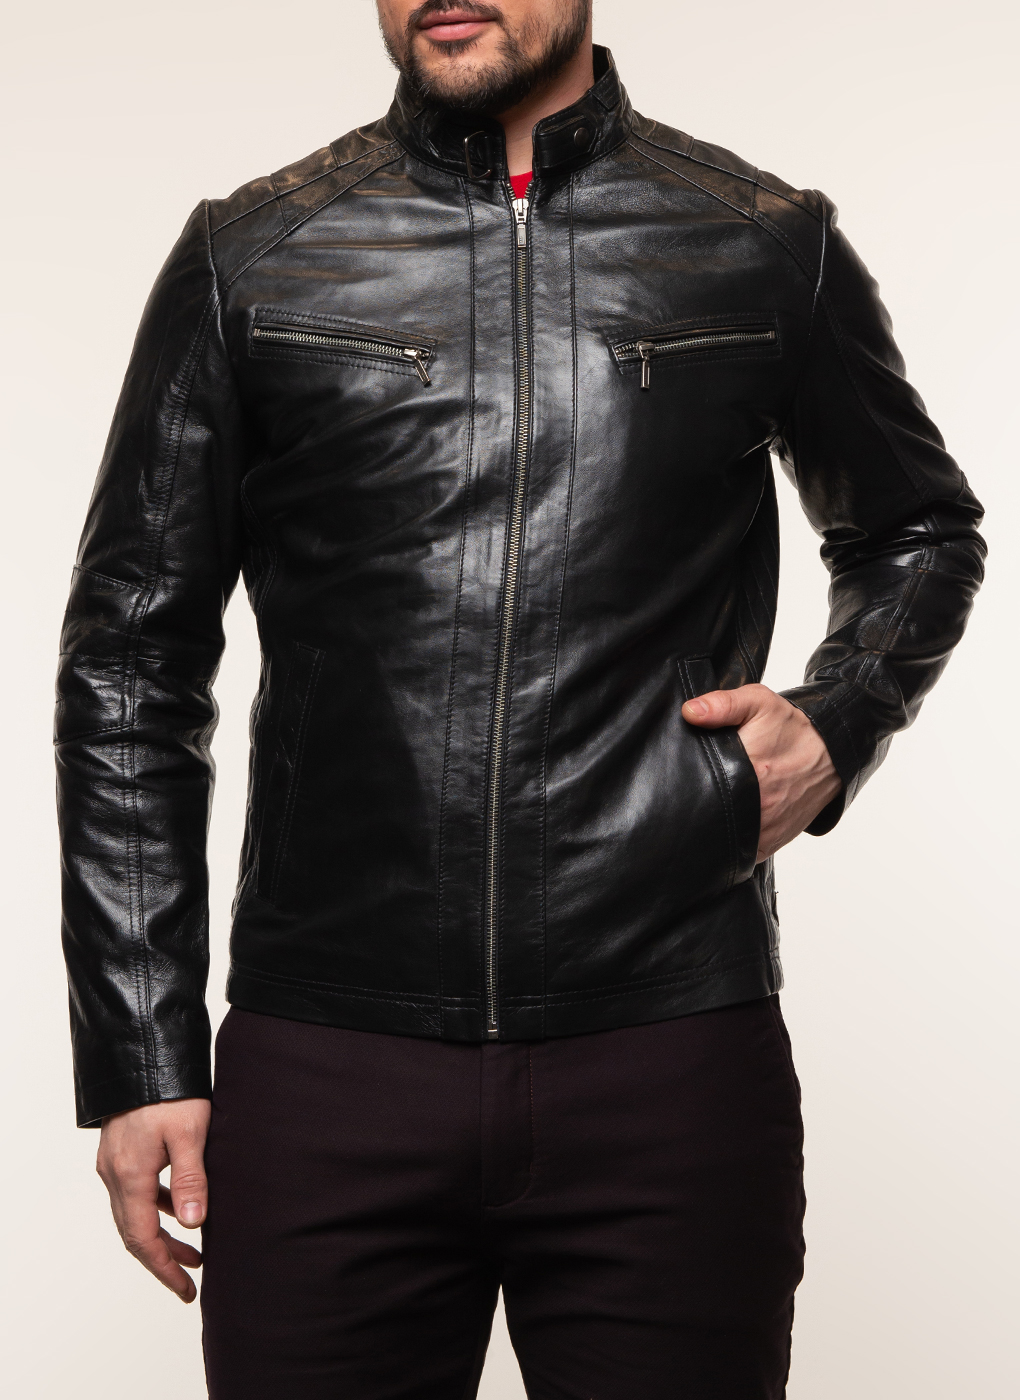 Кожаная куртка мужская Каляев 62647 черная 56 RU